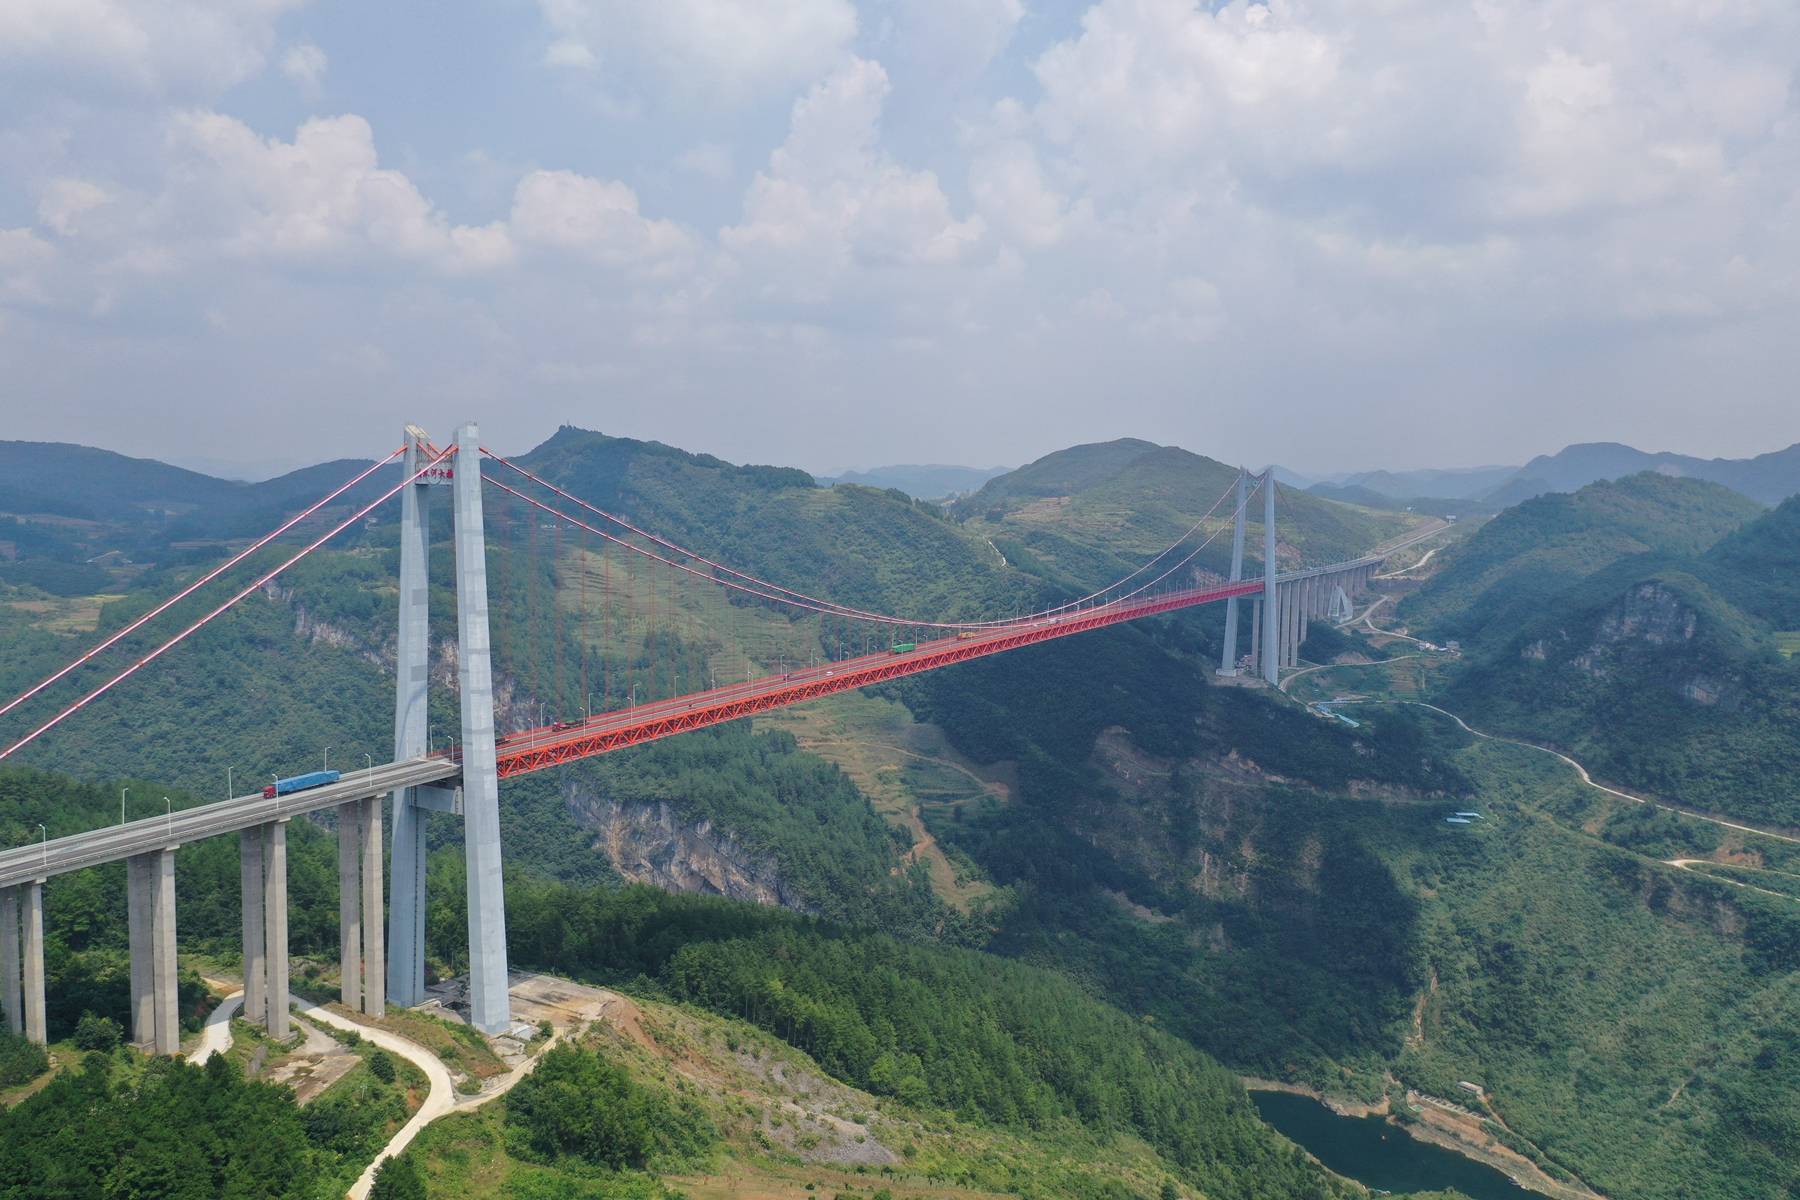 牛!贵州第一大桥清水河特大桥,总投资15亿元,壮美如云端天路